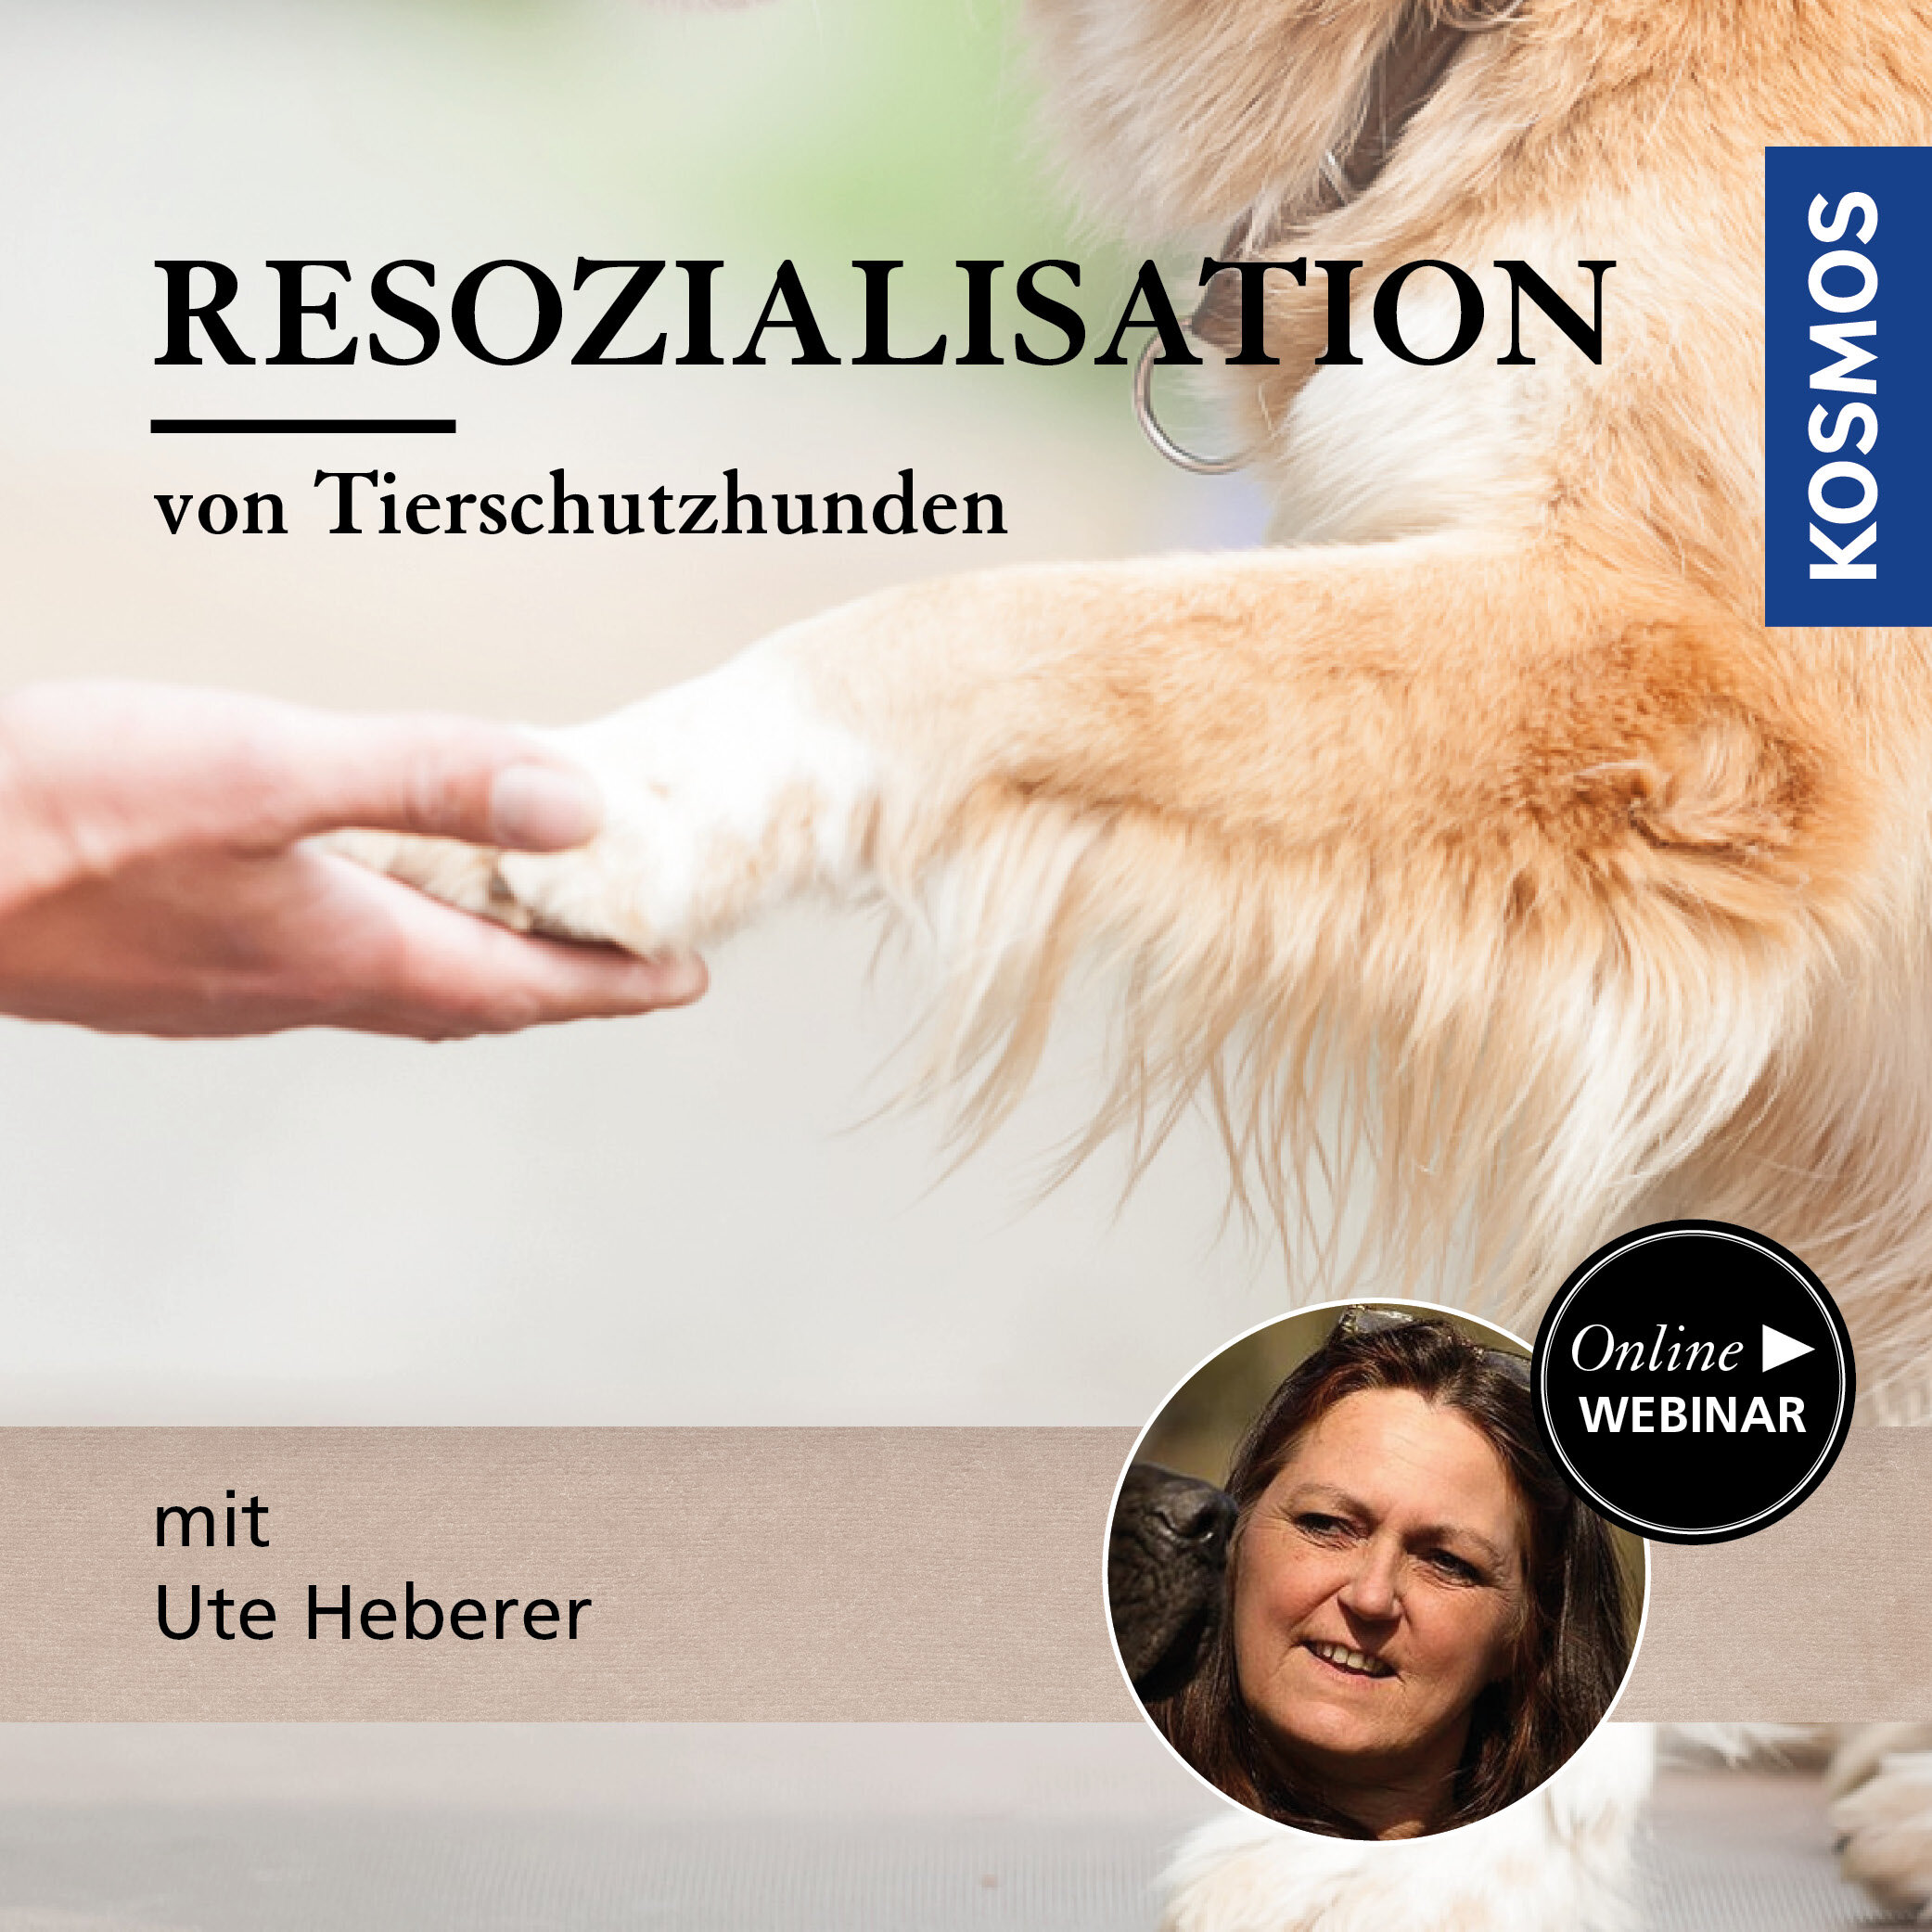 Resozialisation von Tierschutzhunden